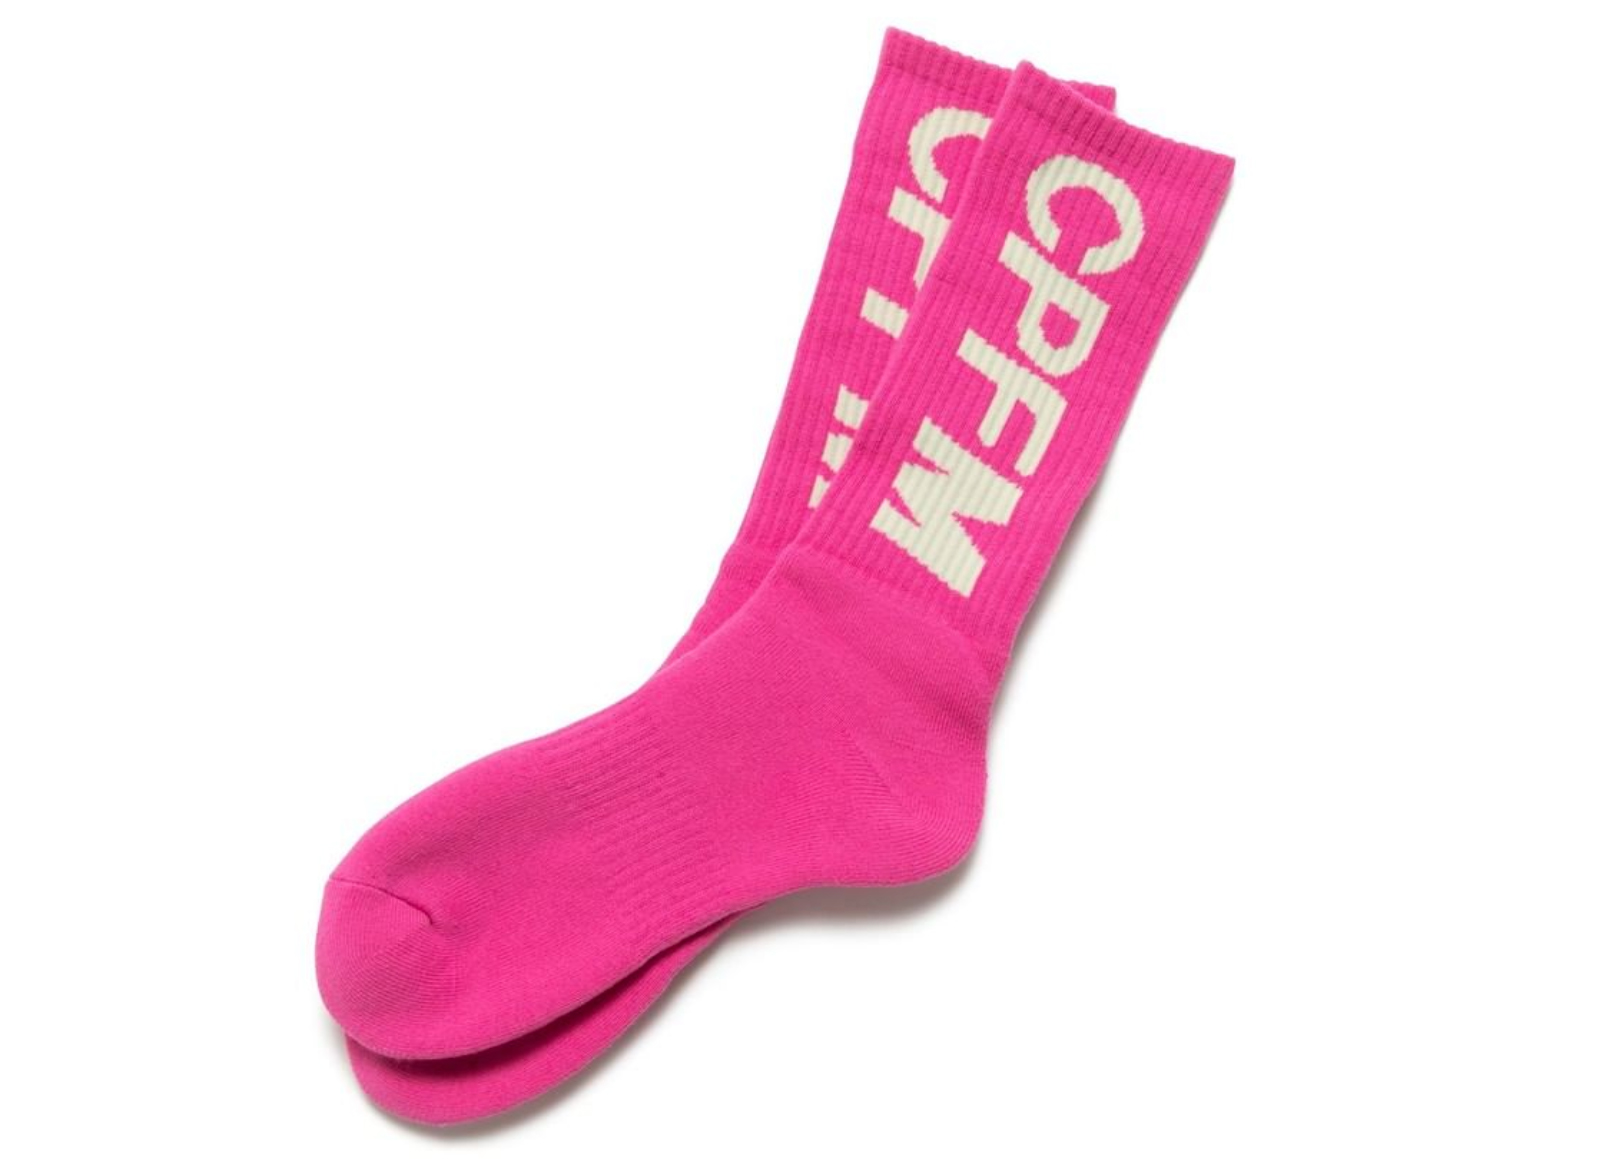 Cactus Plant Flea Market Tube Socks Pink - SS22 - US